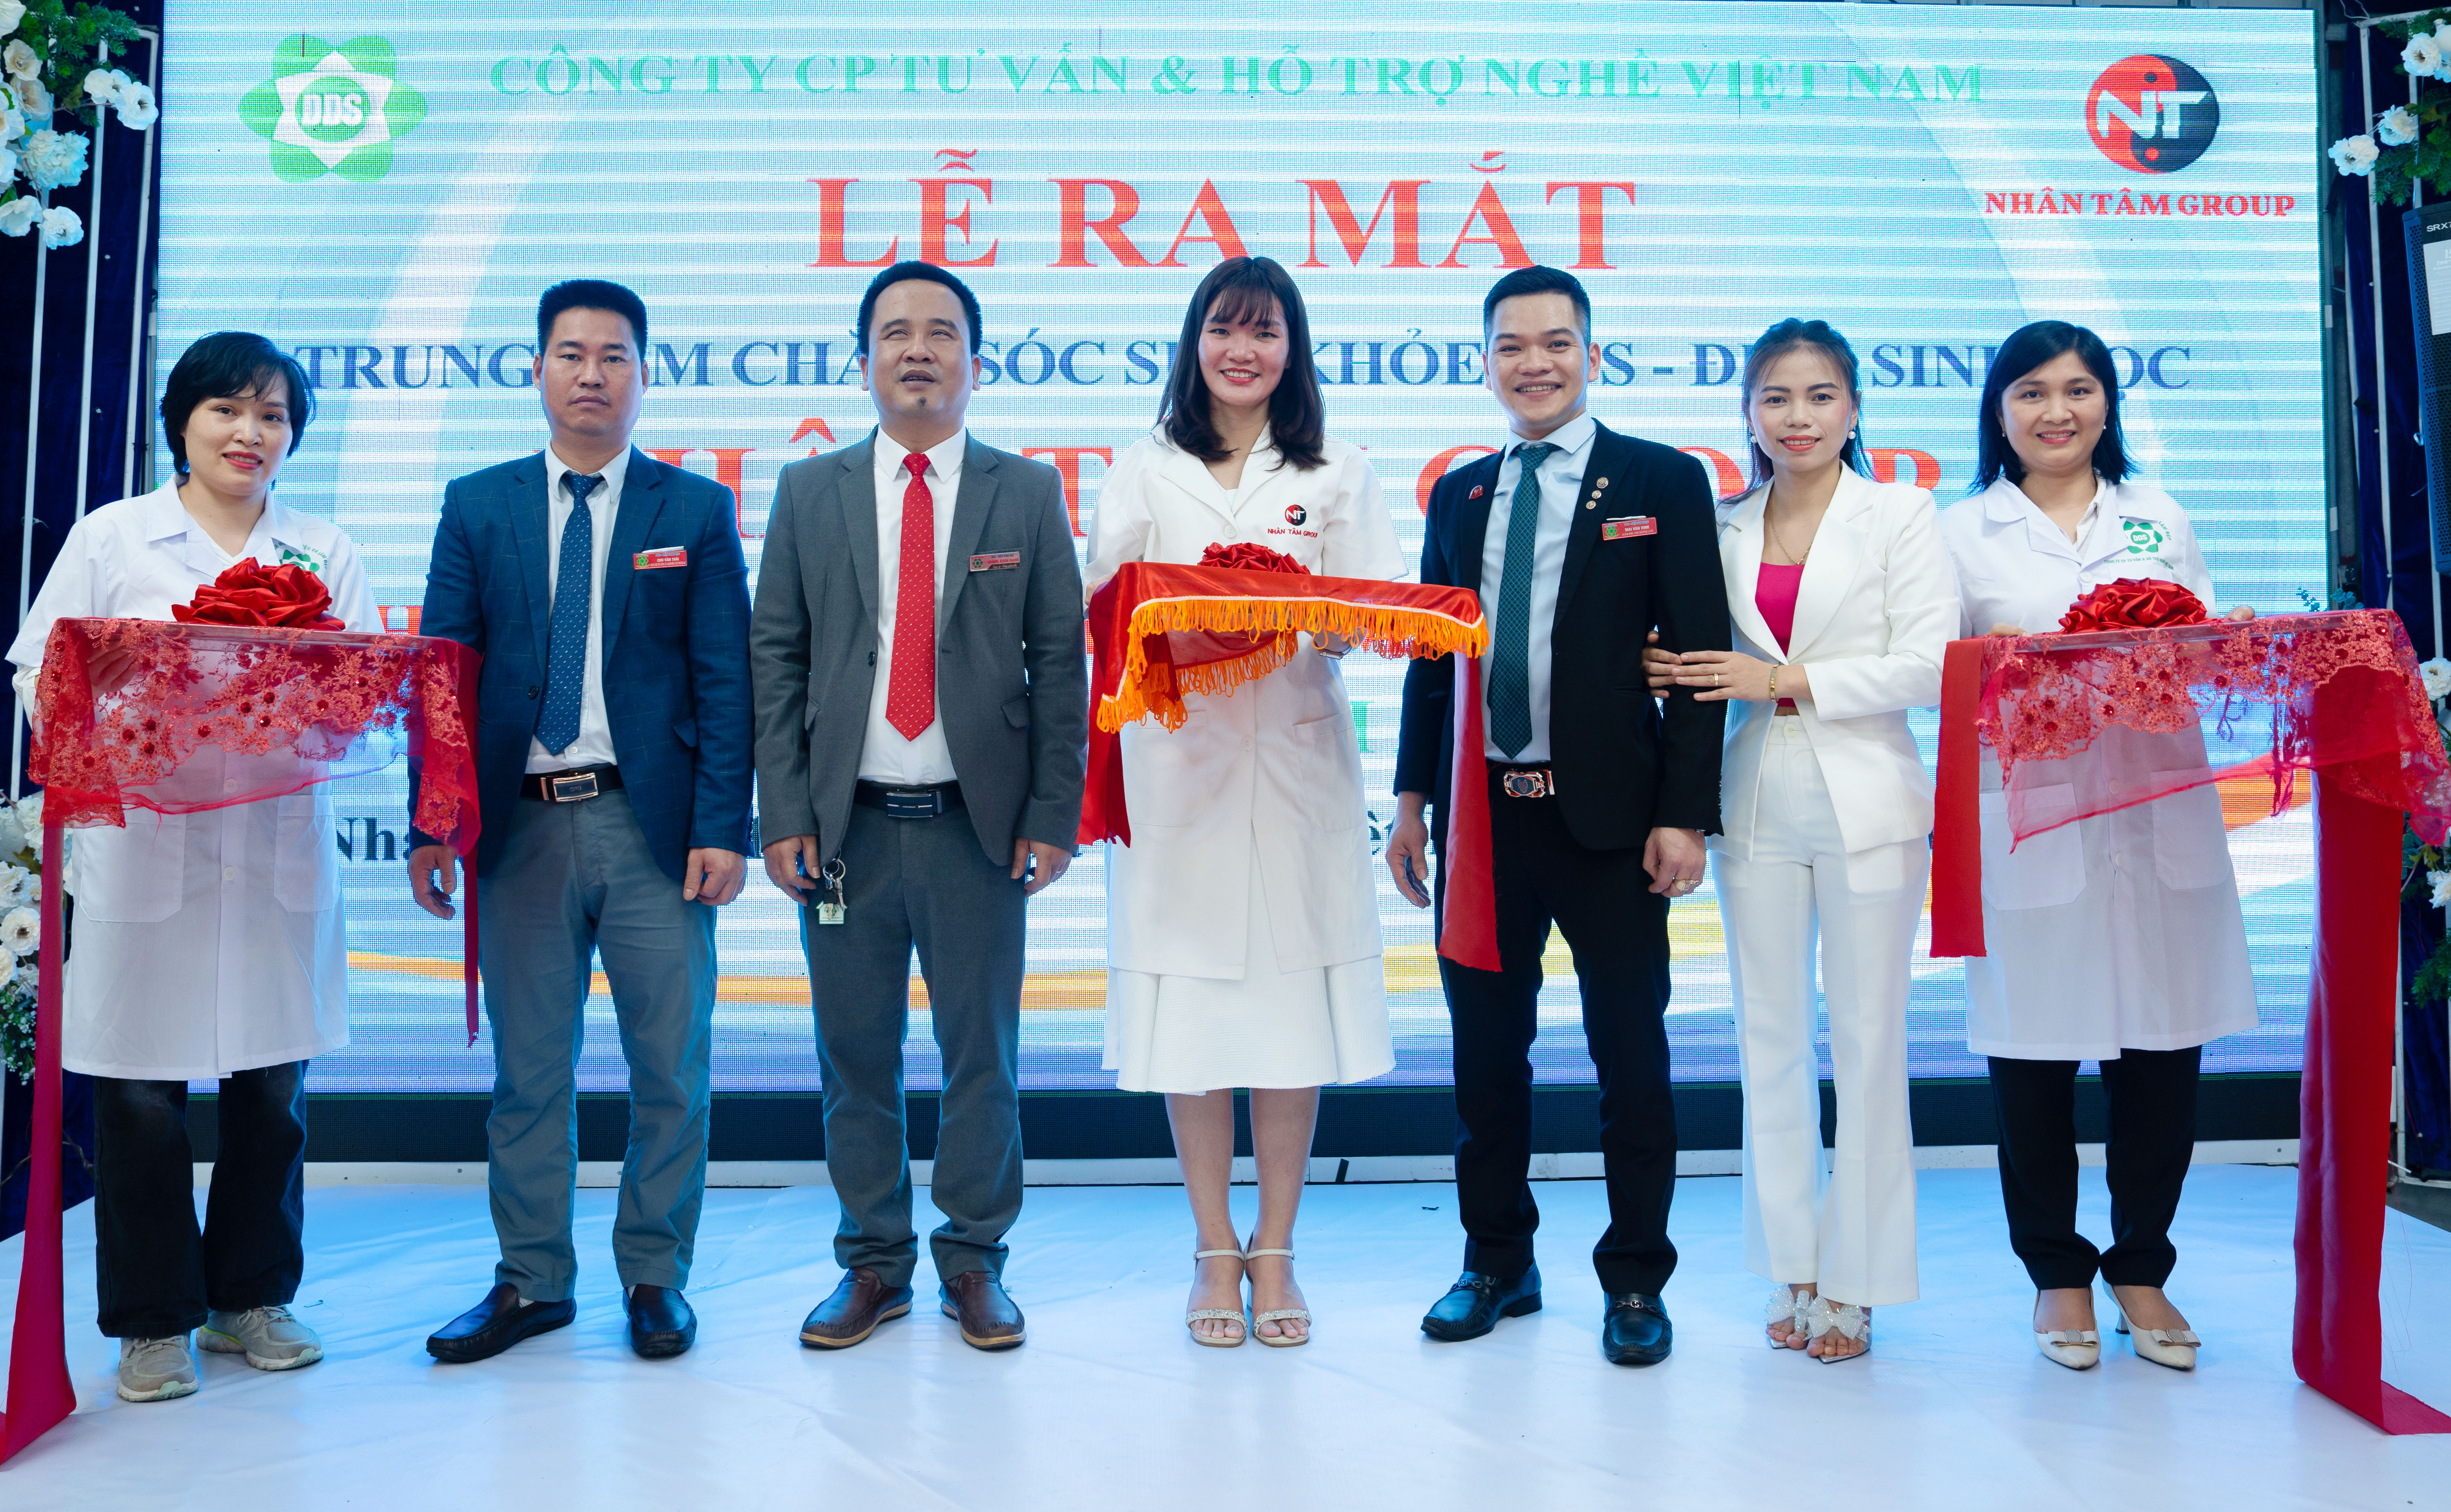 Chi Nhánh A139 ra mắt Trung tâm chăm sóc sức khỏe DDS - Điện sinh học Nhân Tâm Group ở Long Biên, Hà Nội